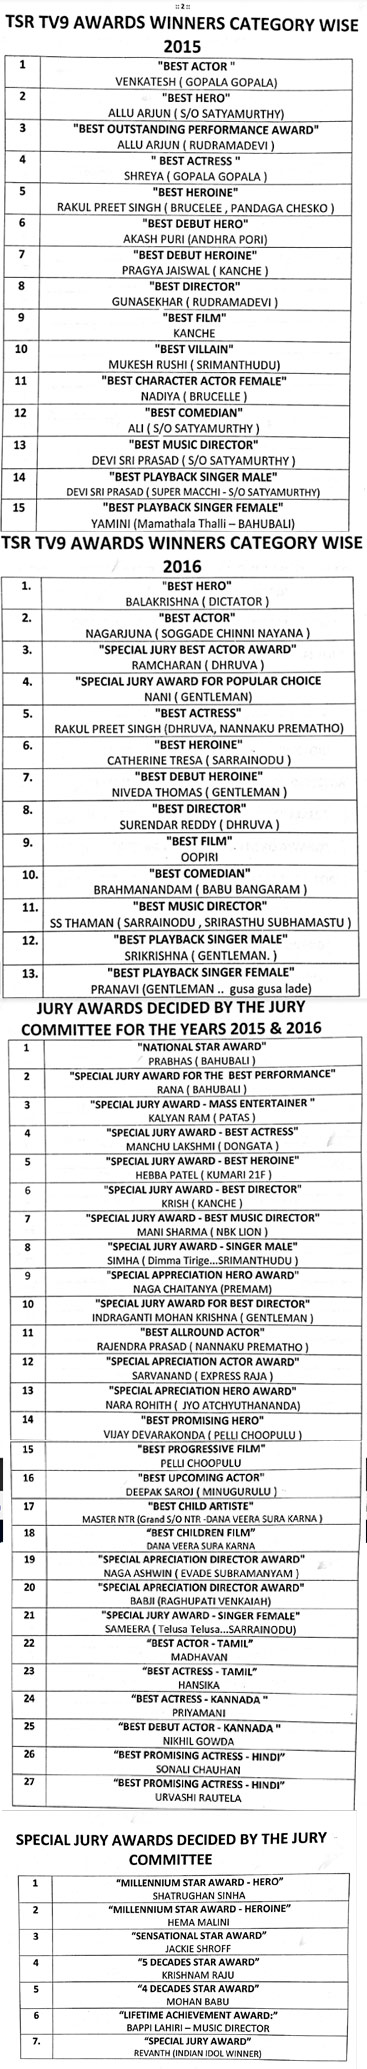 tsr tv 9 awards,tsr tv9 awards 2015,tsr tv9 2016 awards list,prabhas best actor,tsr tv9 awards winners list,t subbarami reddy  TSR TV9 Awards 2015-16 అవార్డ్స్ లిస్ట్..!